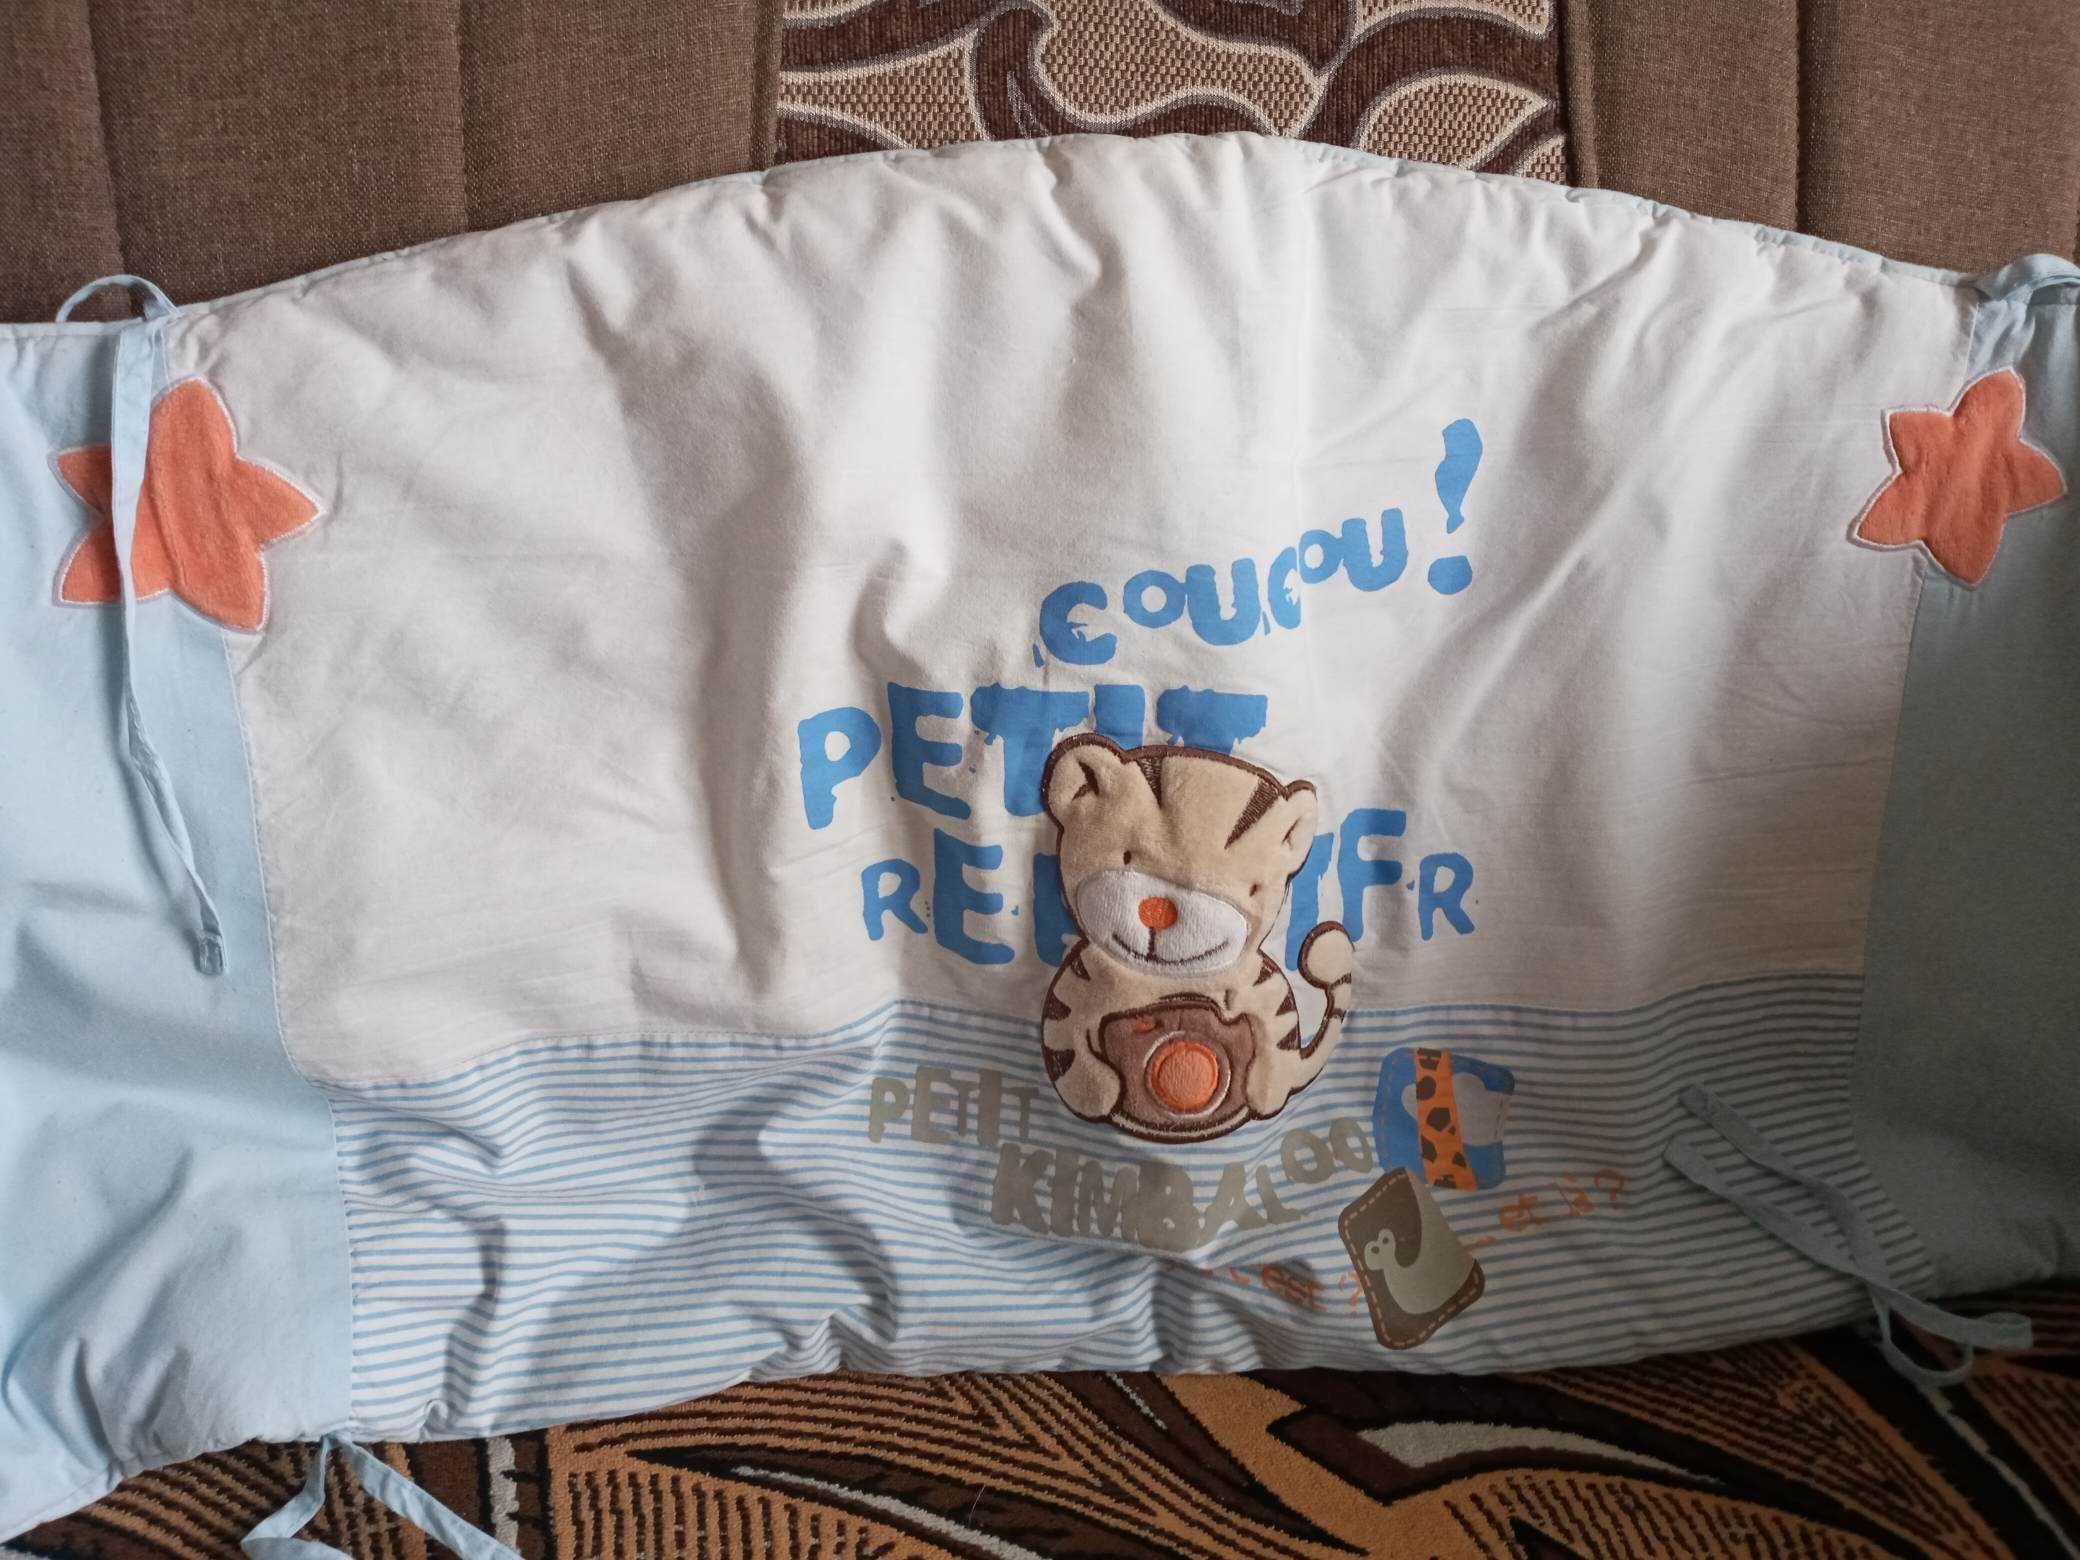 Захист (бампер) в дитяче ліжечко / Защита (бампер) в детскую кроватку